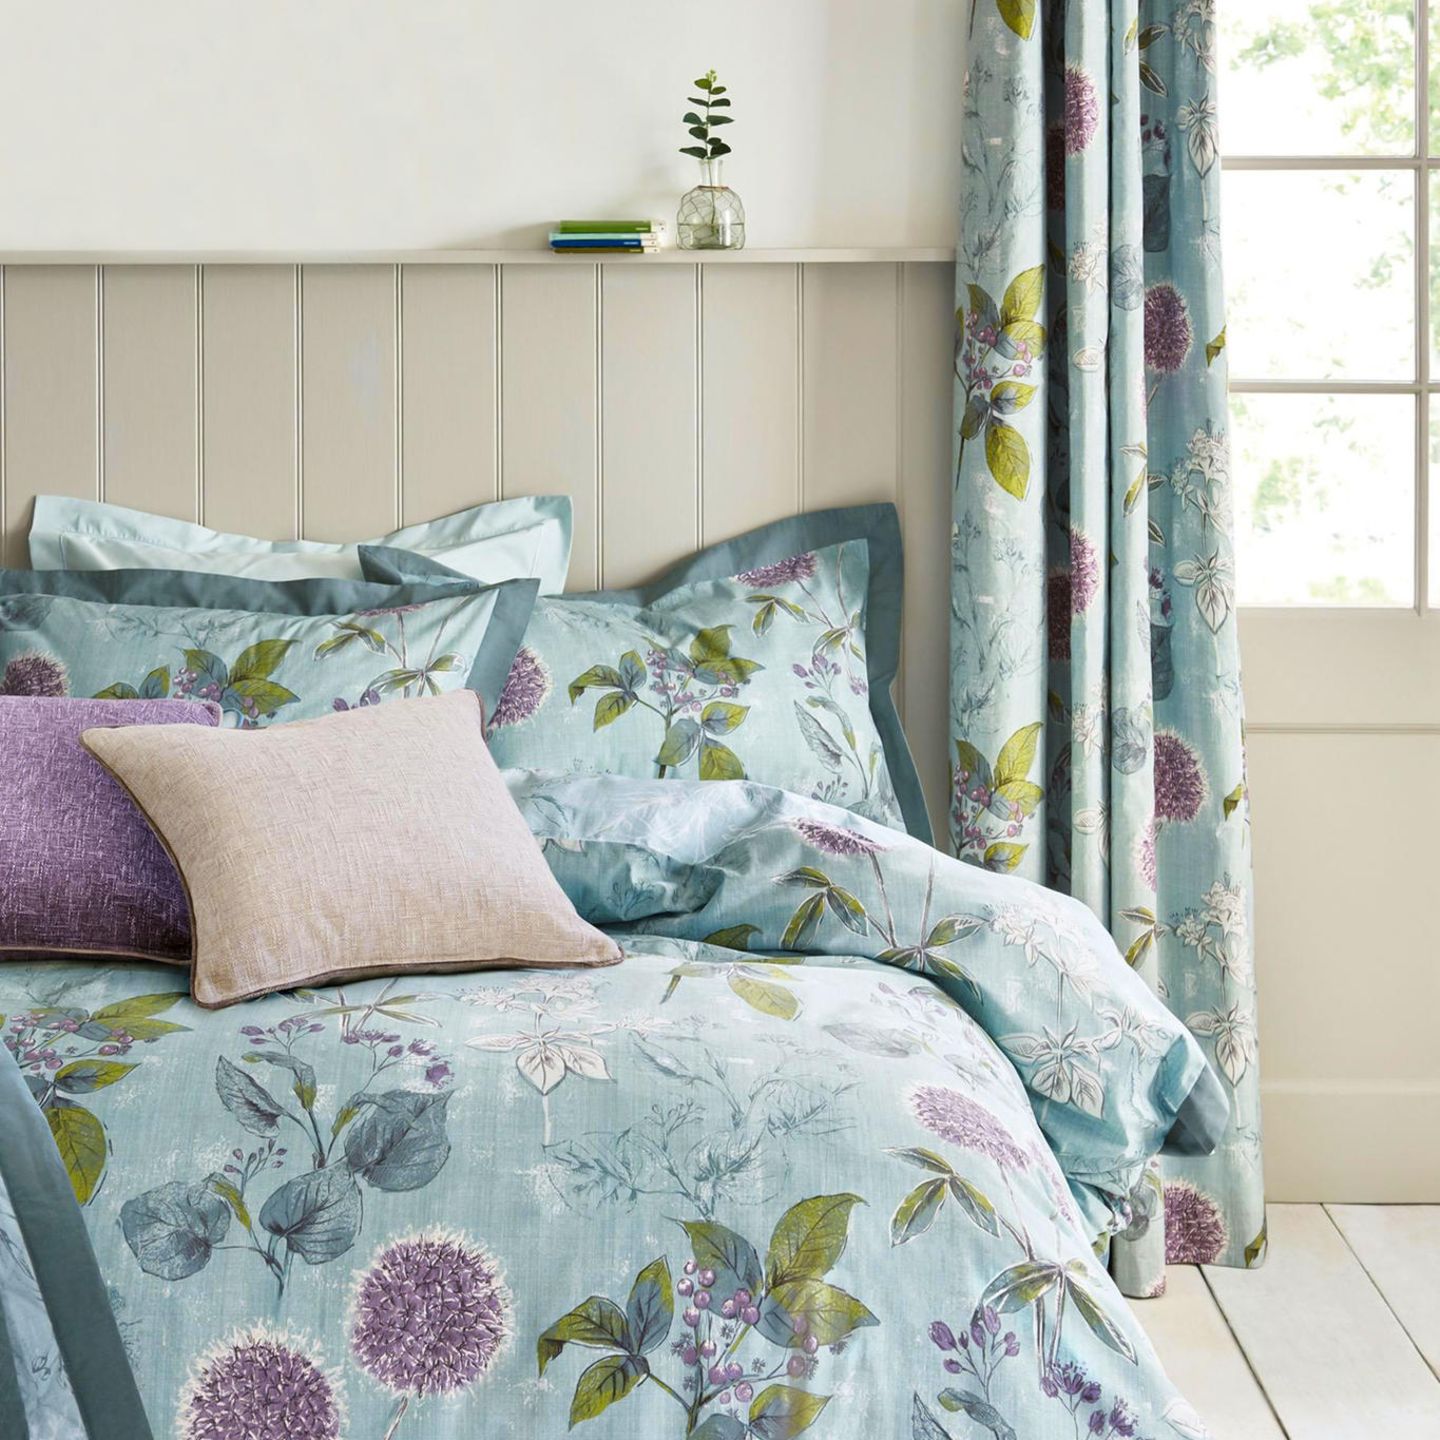 Gästezimmer einrichten: Bett im Landhausstil mit Blumendruck-Bettwäsche